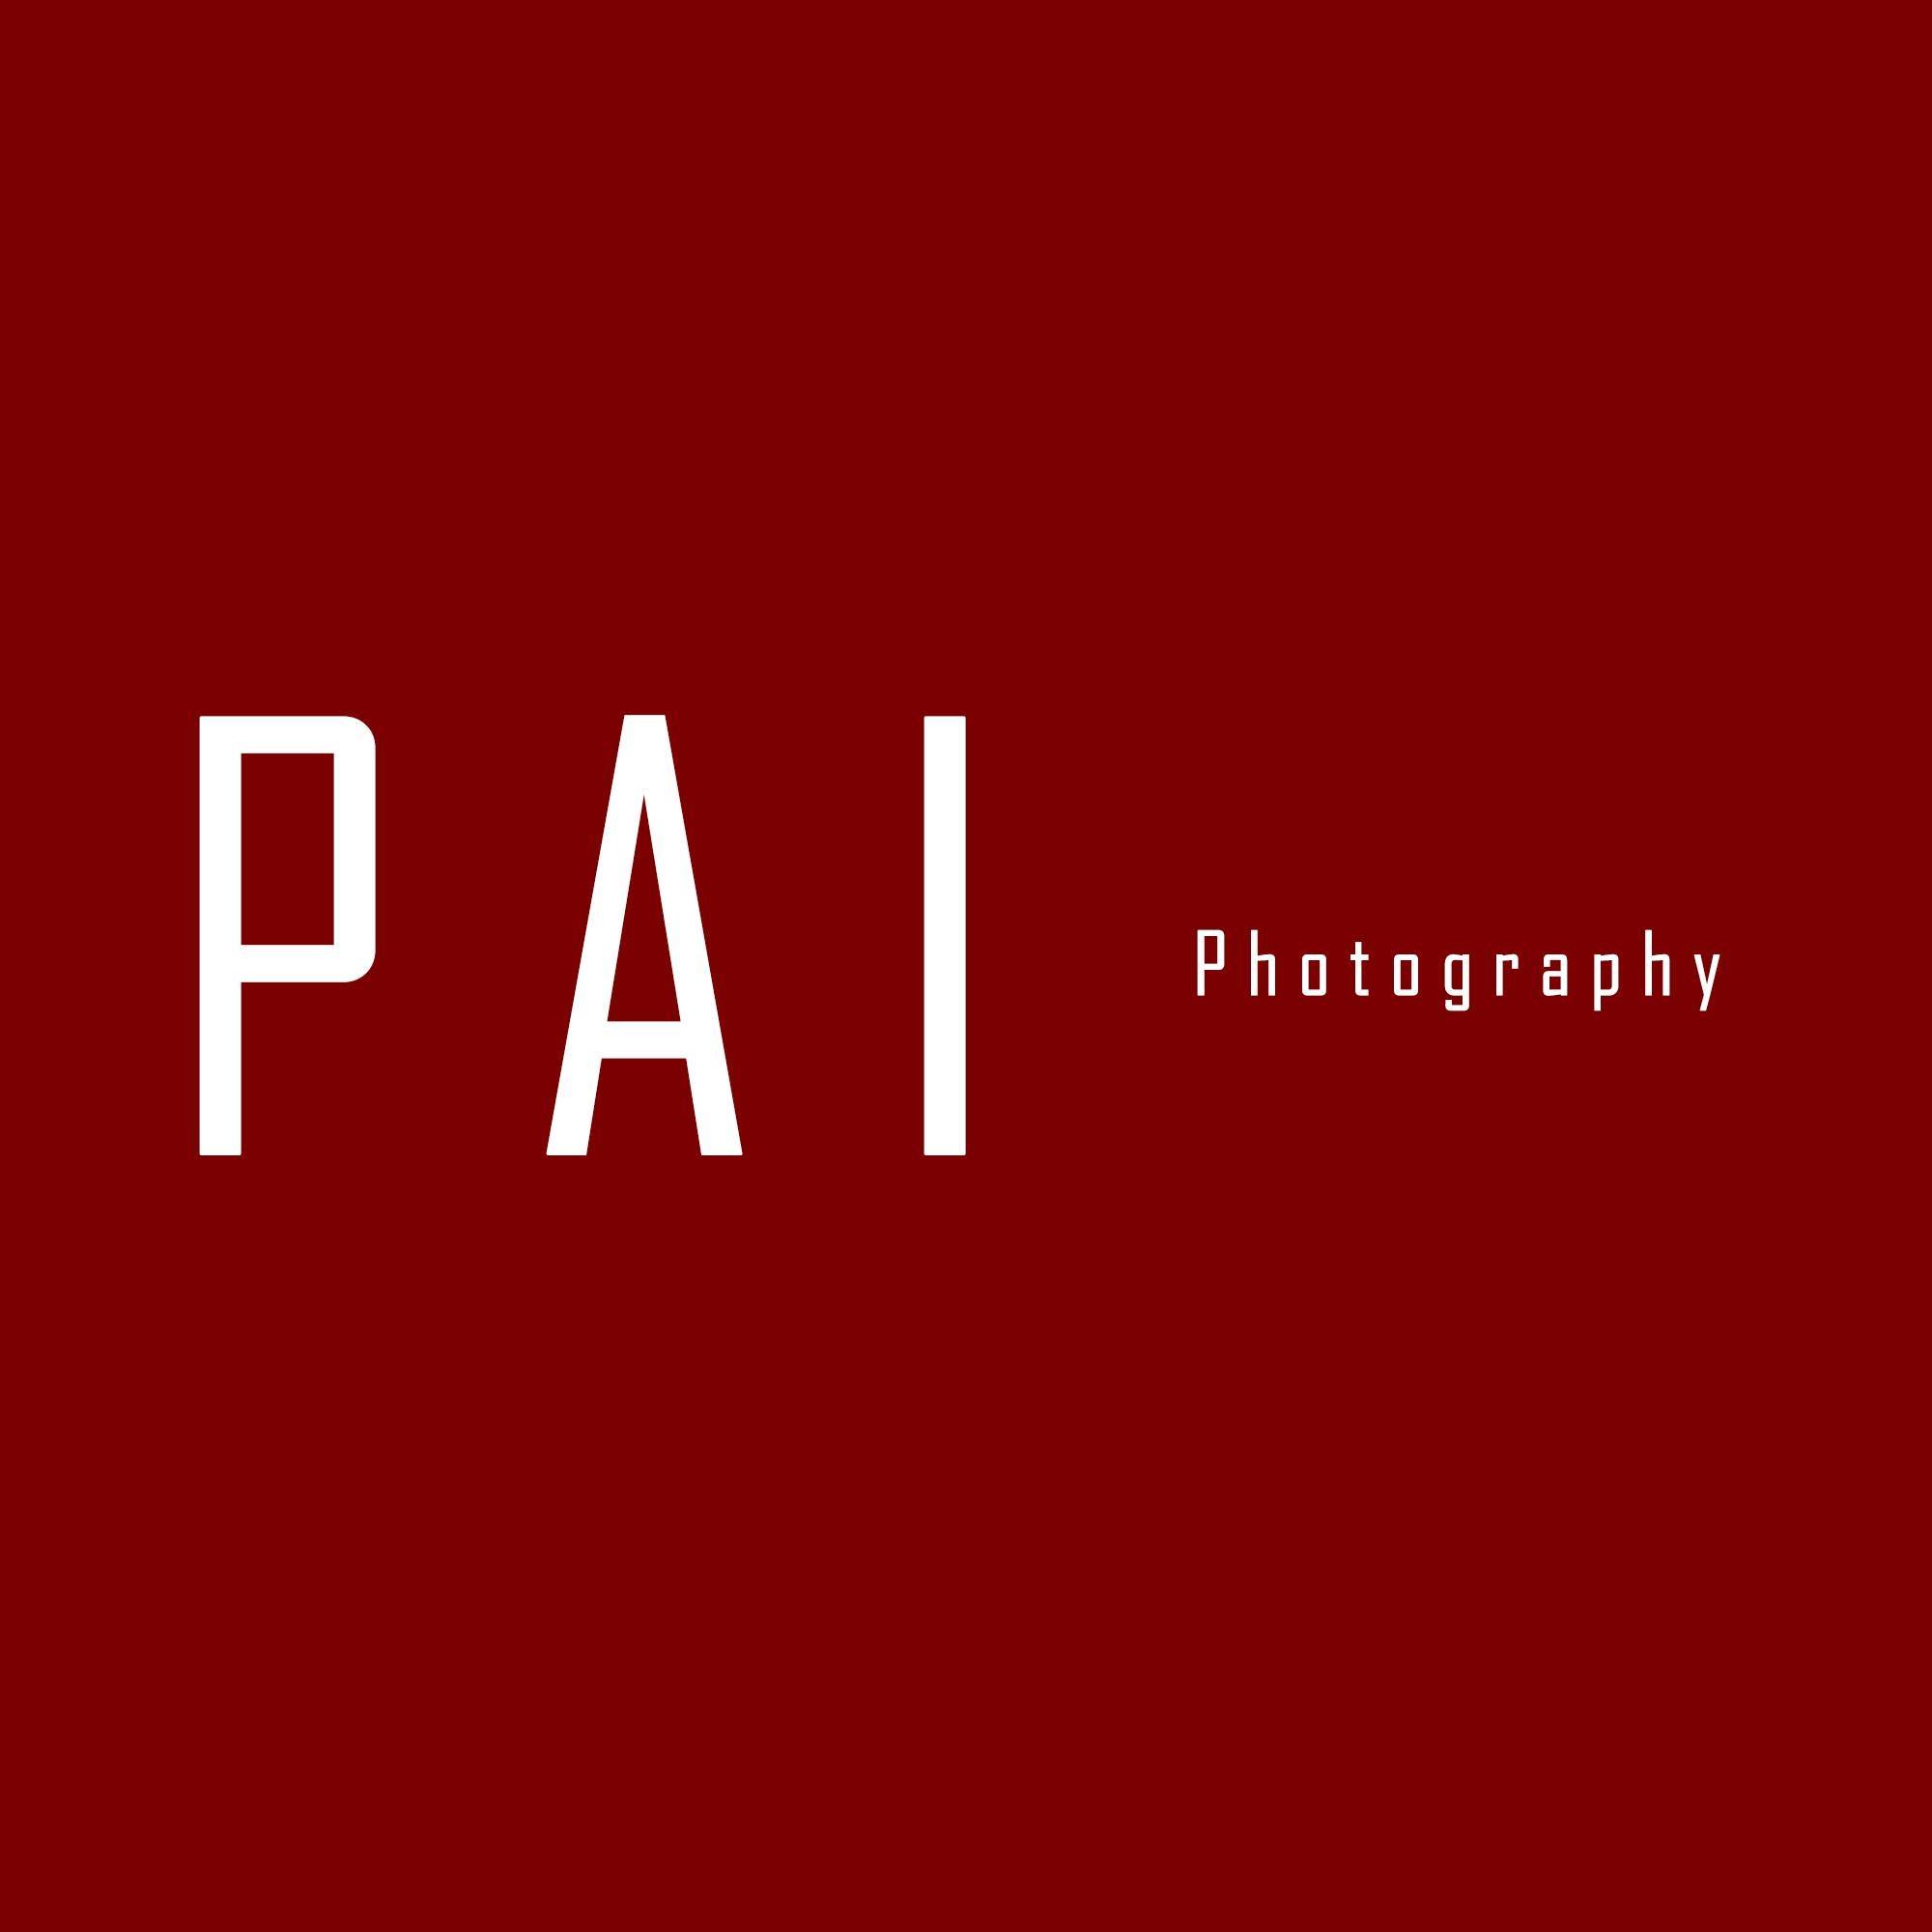 派大峰攝影工作室 PAI Photography